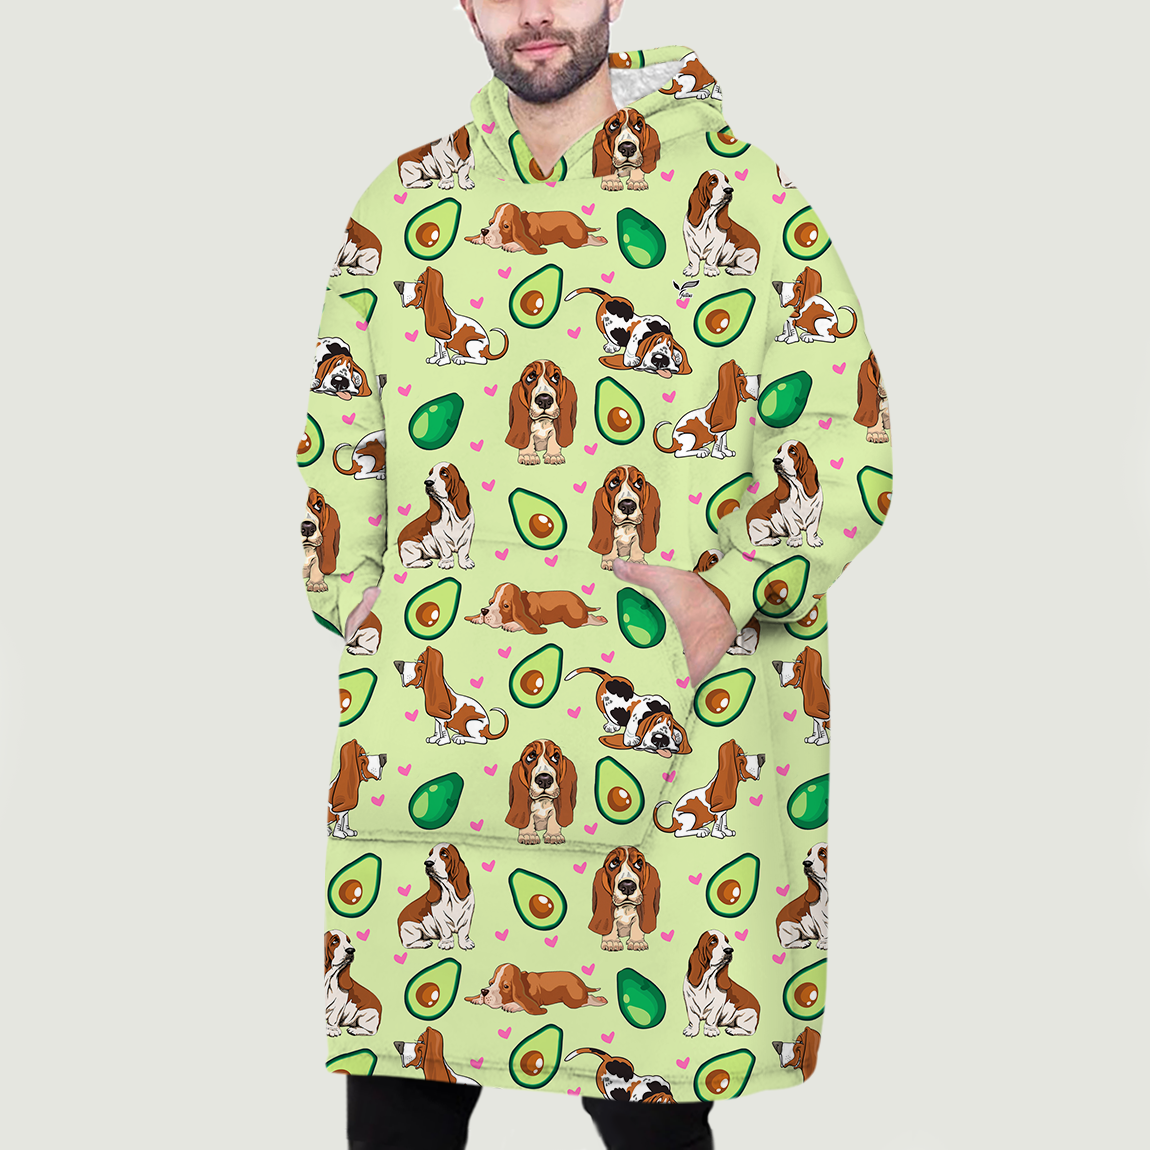 Ich liebe Avocados – Basset Hound Fleece-Decke-Hoodie